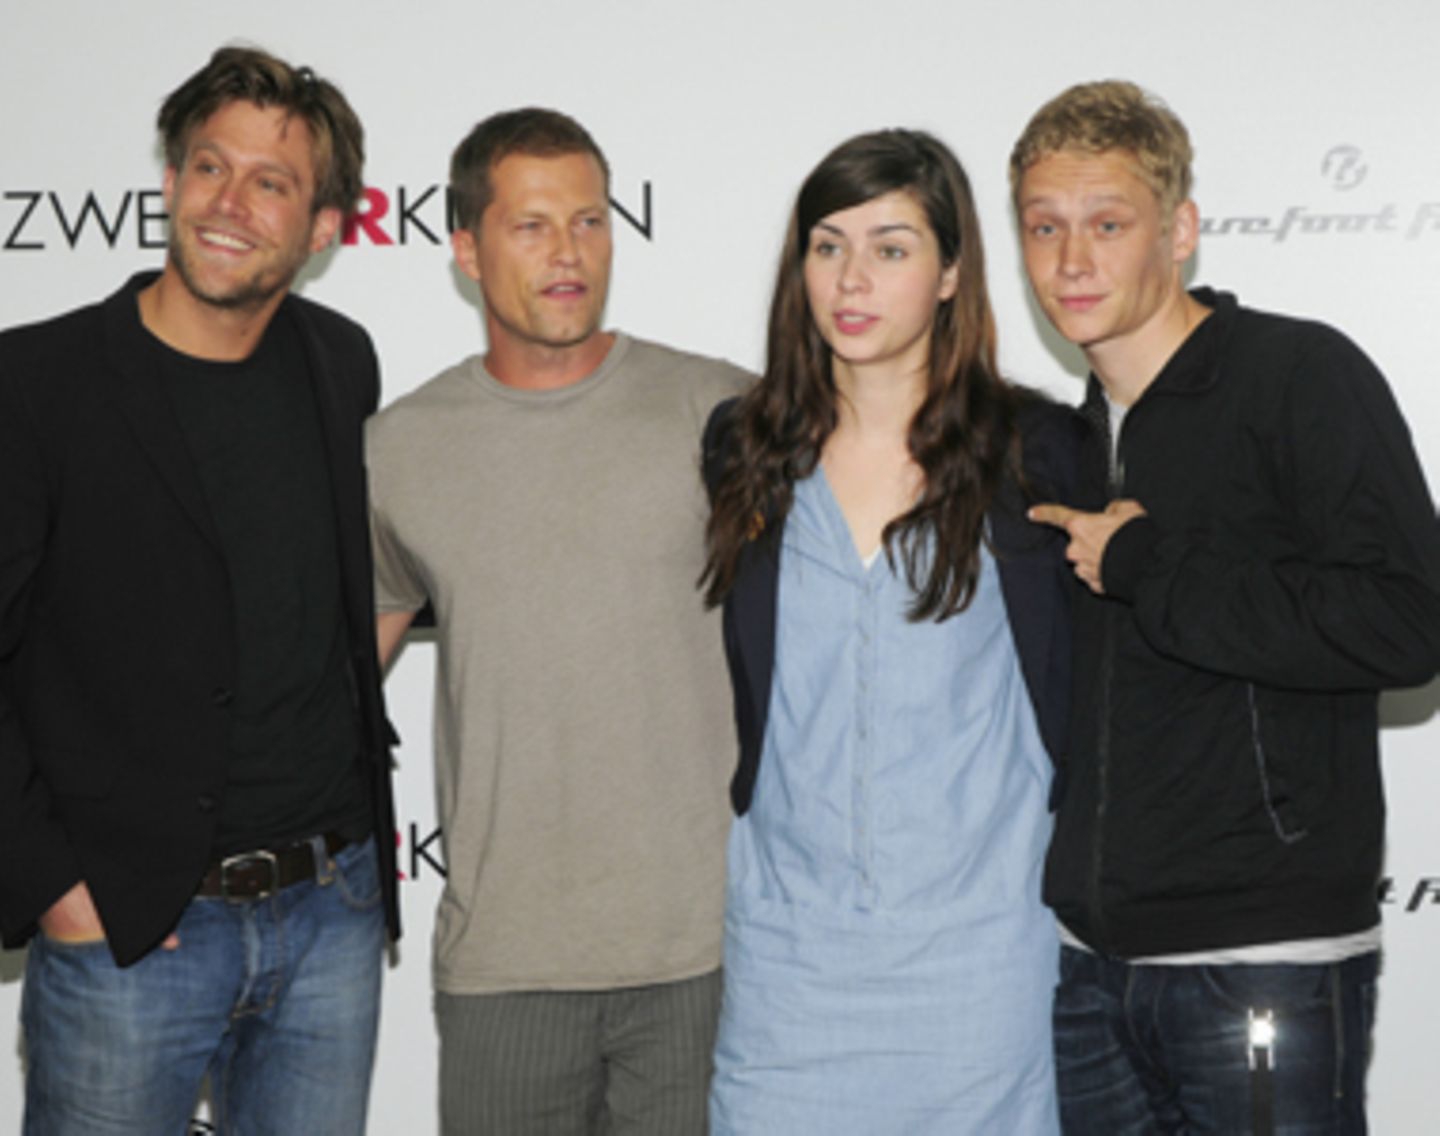 im Kino: "Zweiohrküken" Ken Duken, Til Schweiger, Nora Tschirner und Matthias Schweighöfer (von links) bei der Pressekonferenz